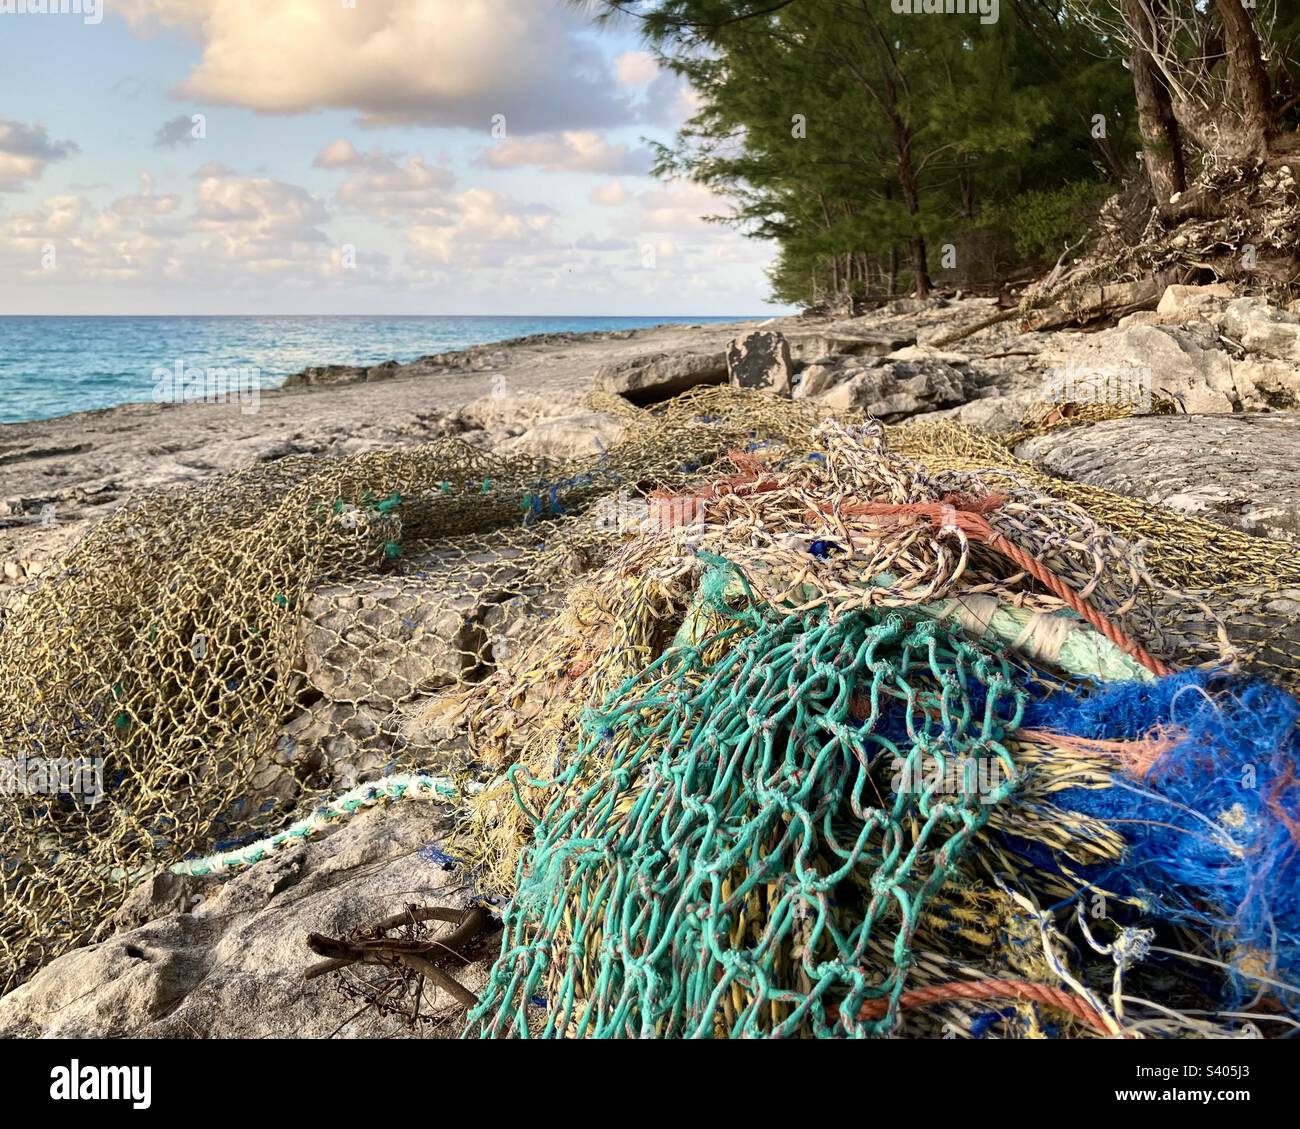 Gafas fabricadas con redes de pesca abandonadas en el mar, redes